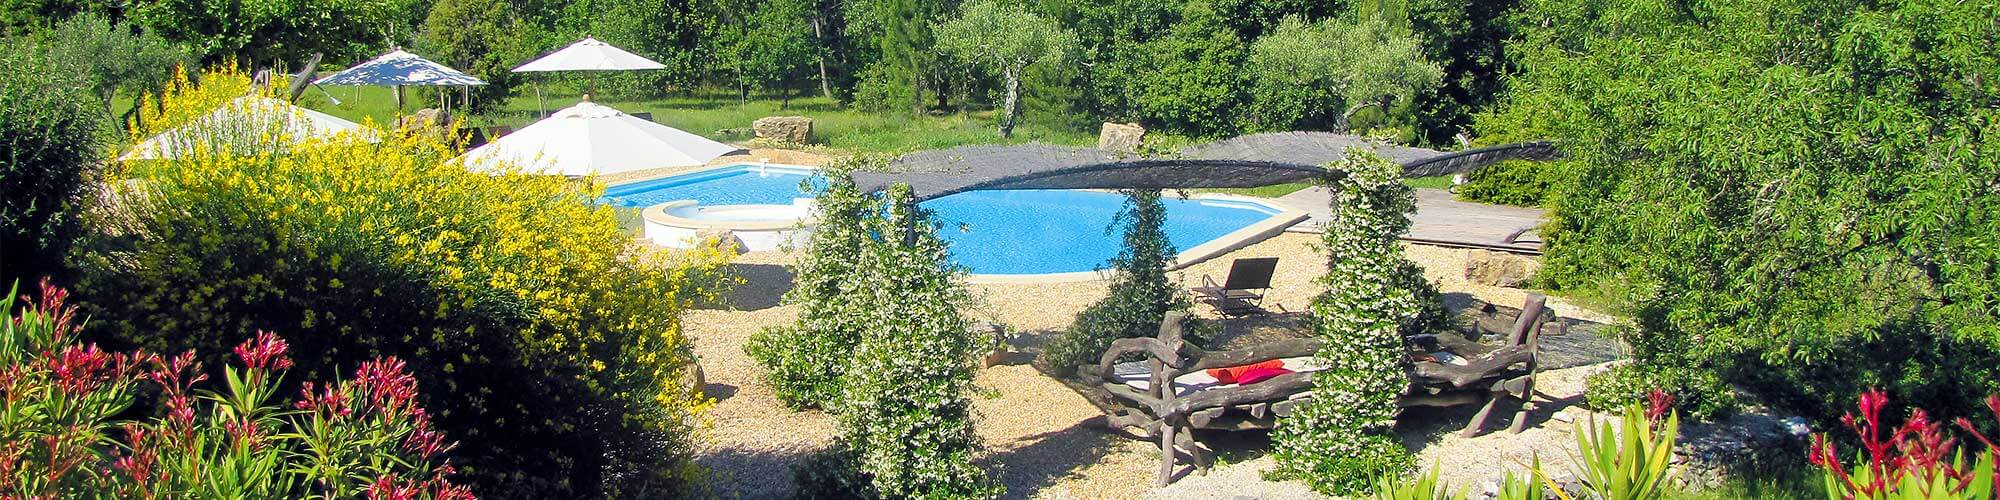 Sport-Hotel mit Pool im Natur-Paradies